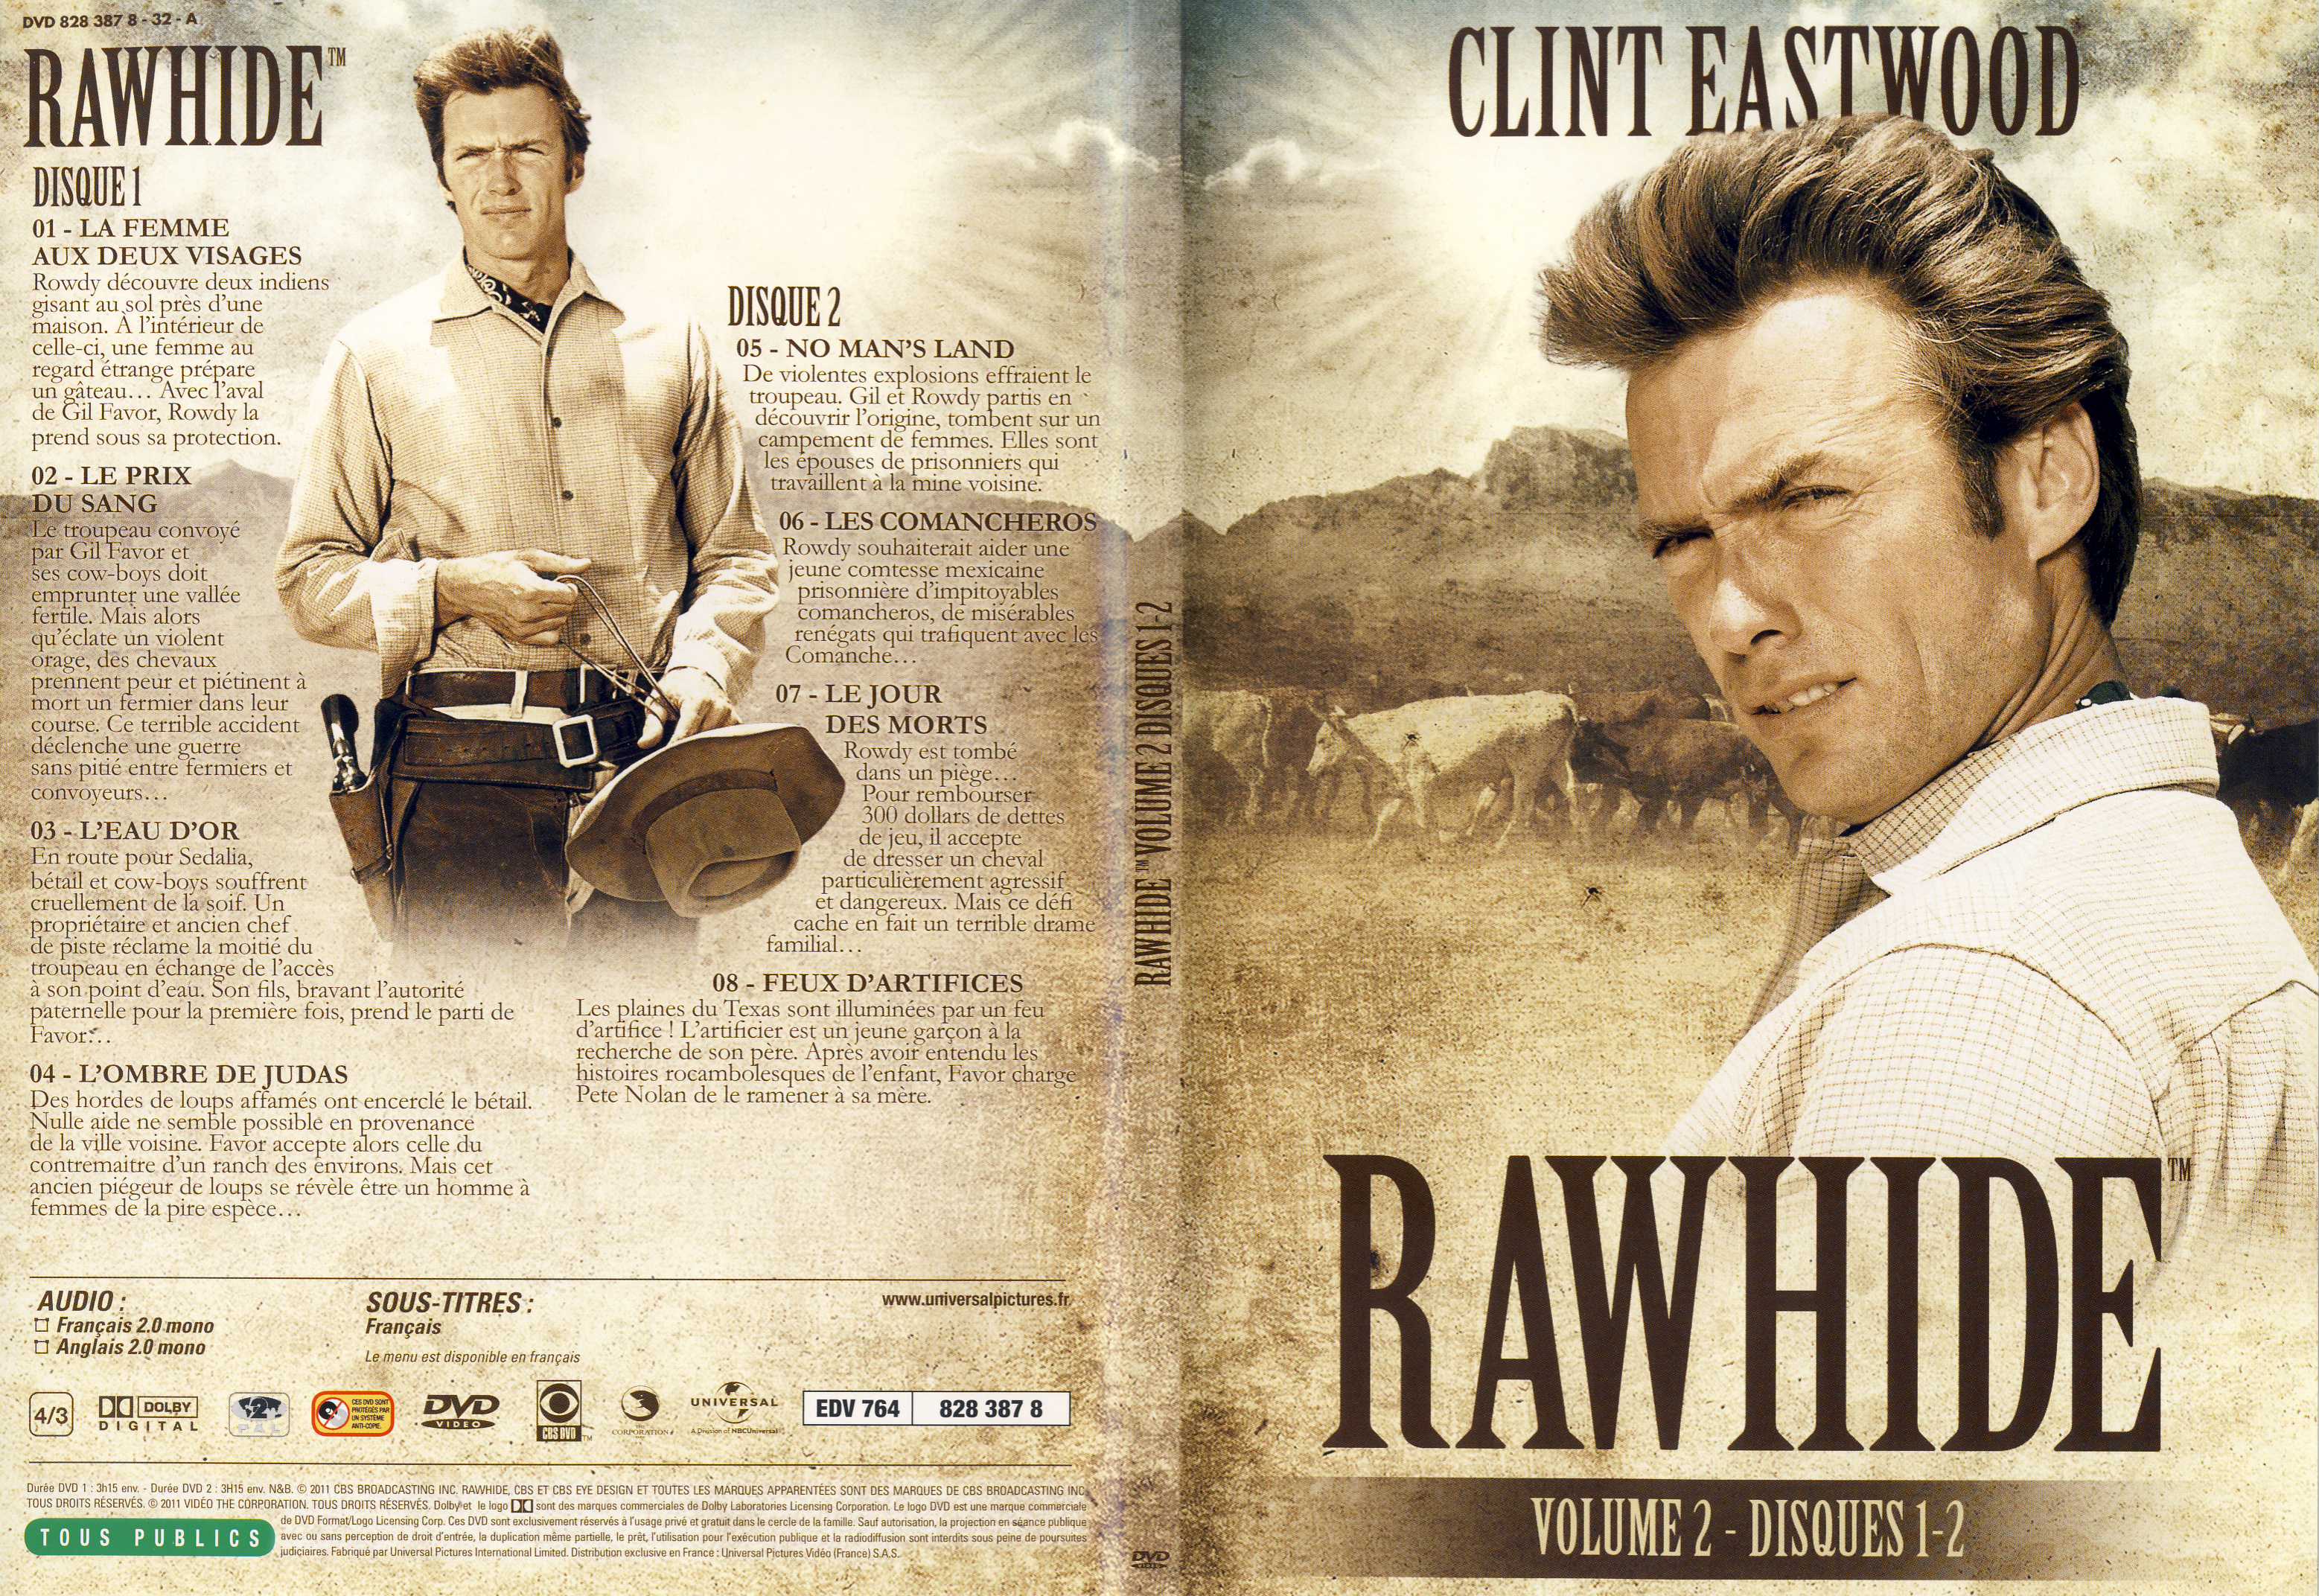 Jaquette DVD Rawhide vol 02 DVD 1 - SLIM